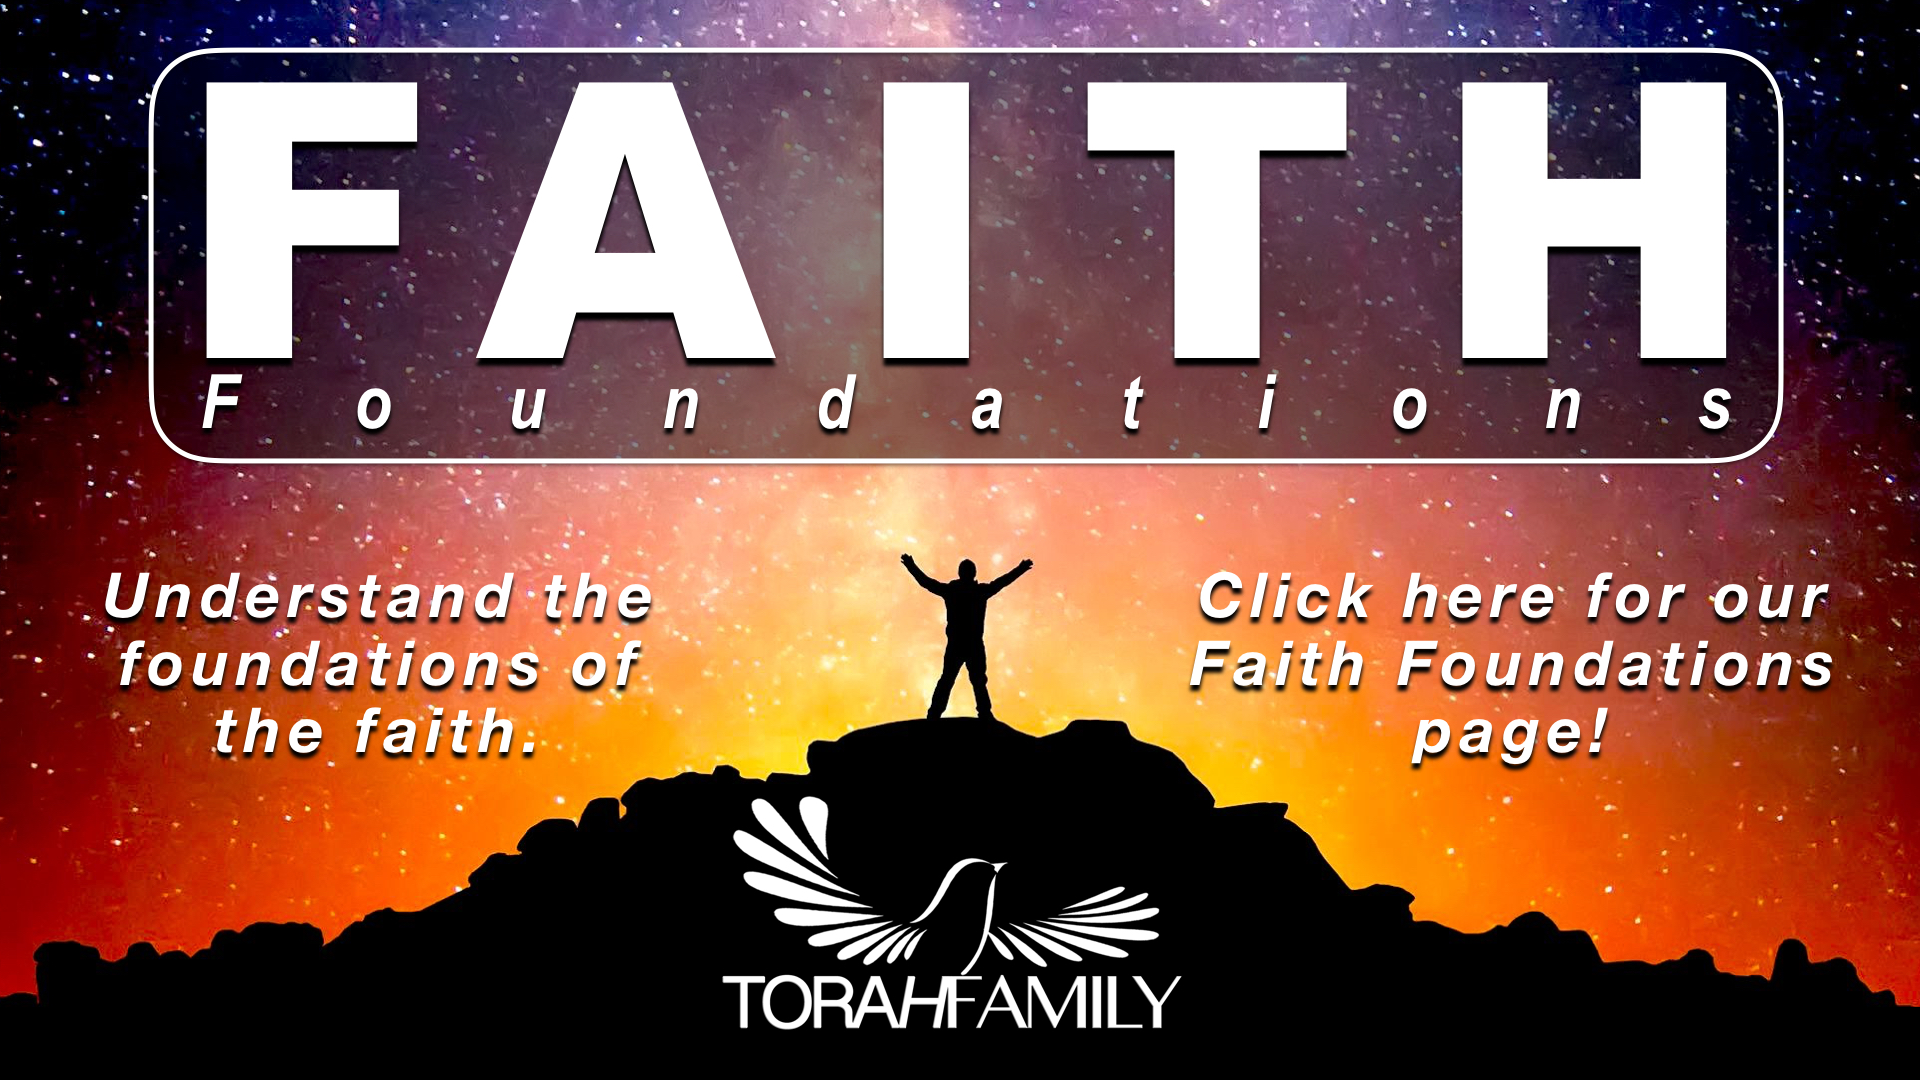 Faith Foundations